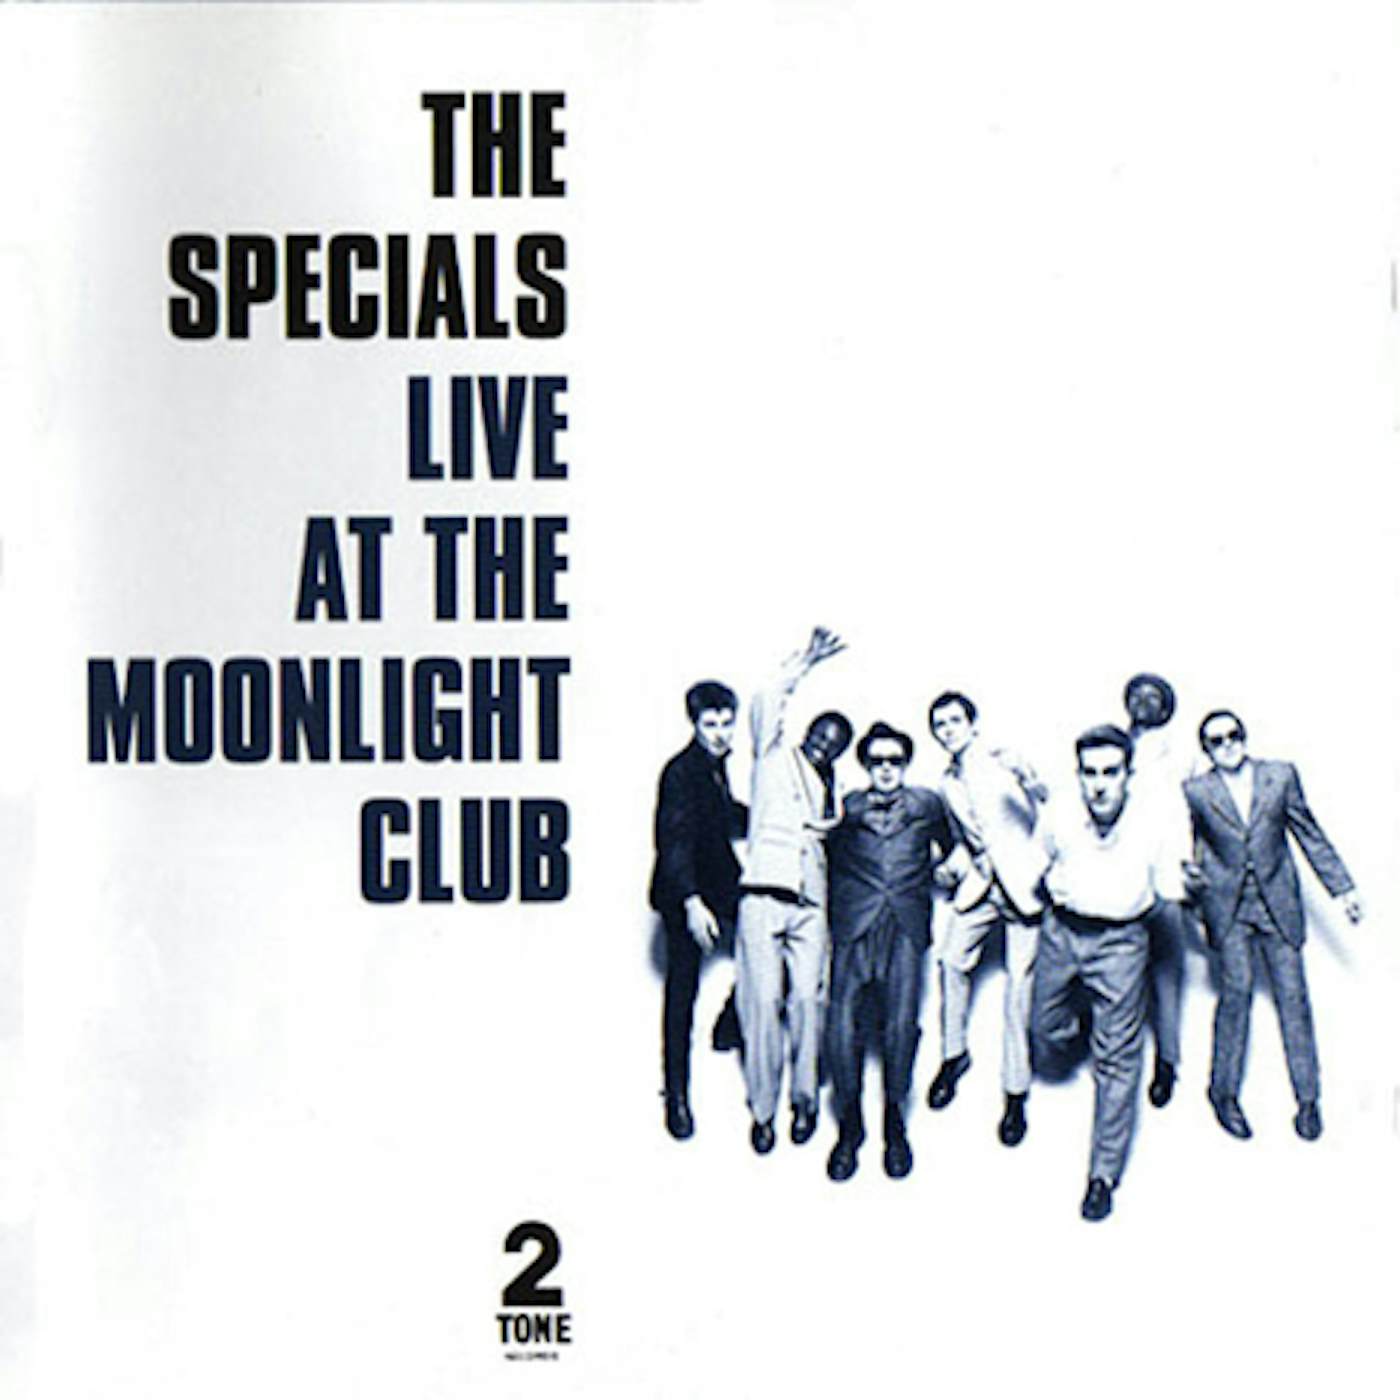 The Specials Live at the Moonlight Club Vinyl Record